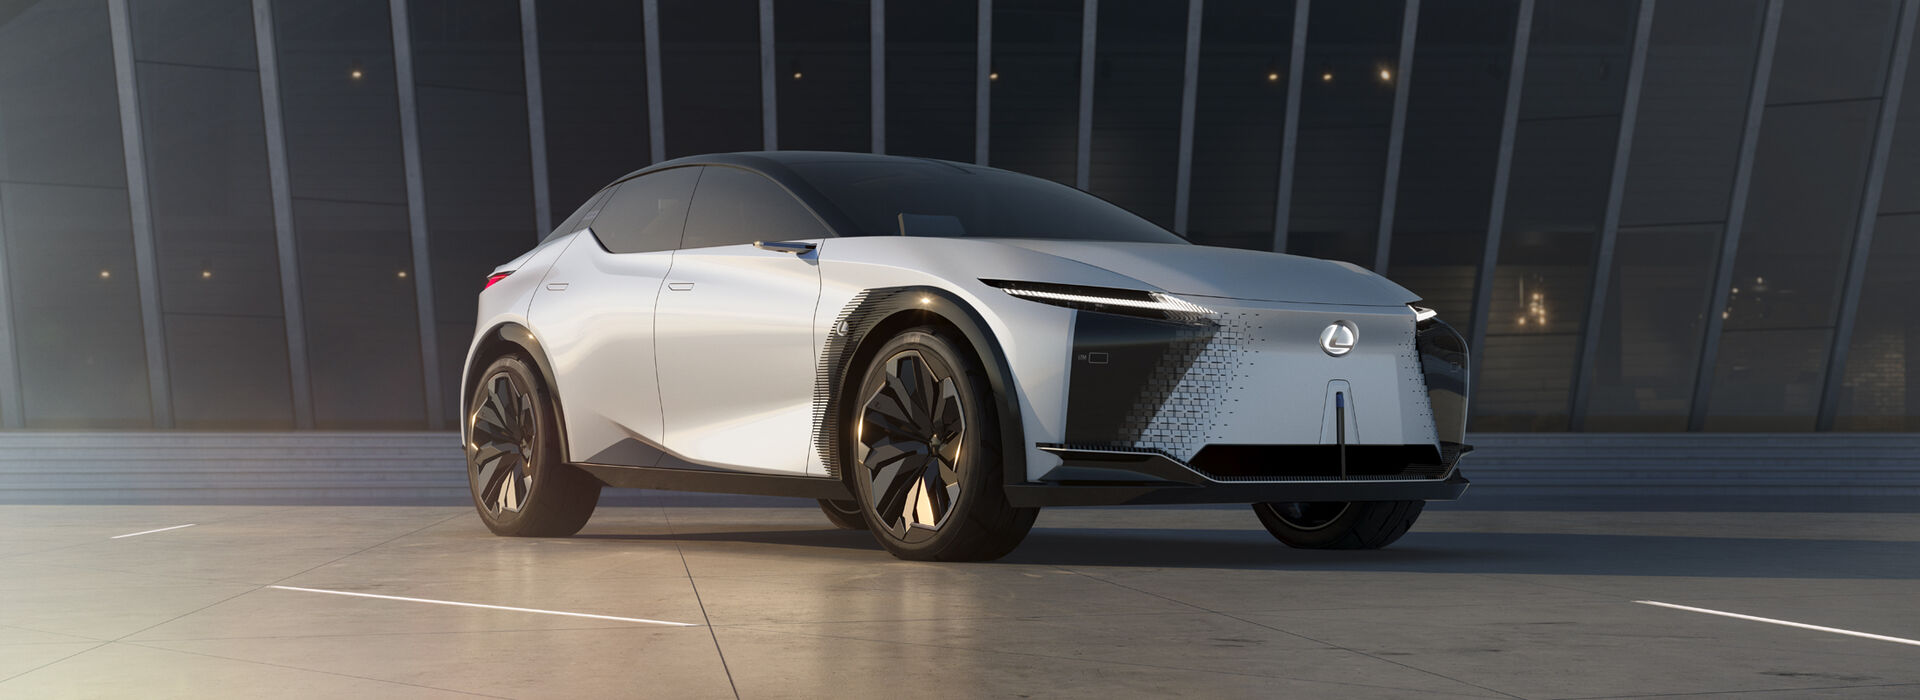 Weltpremiere Lexus LF-Z Electrified Concept